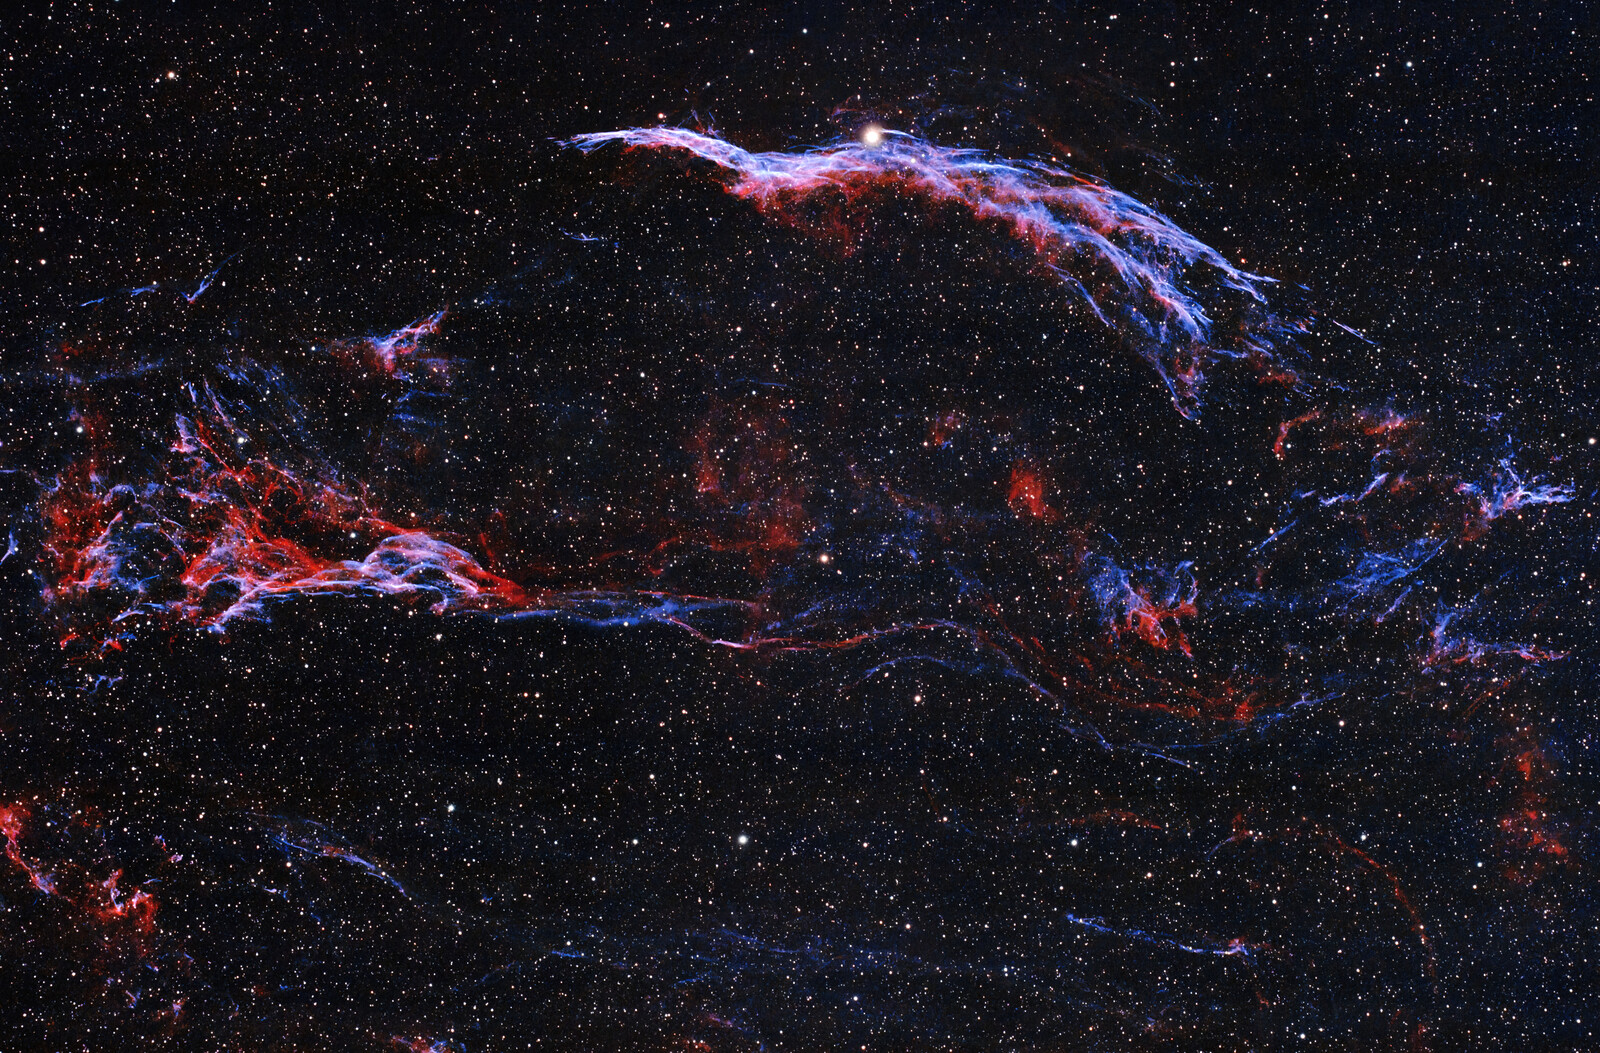 Cygnus Loop (Sh 2-103), Veil Nebula and NGC 6960